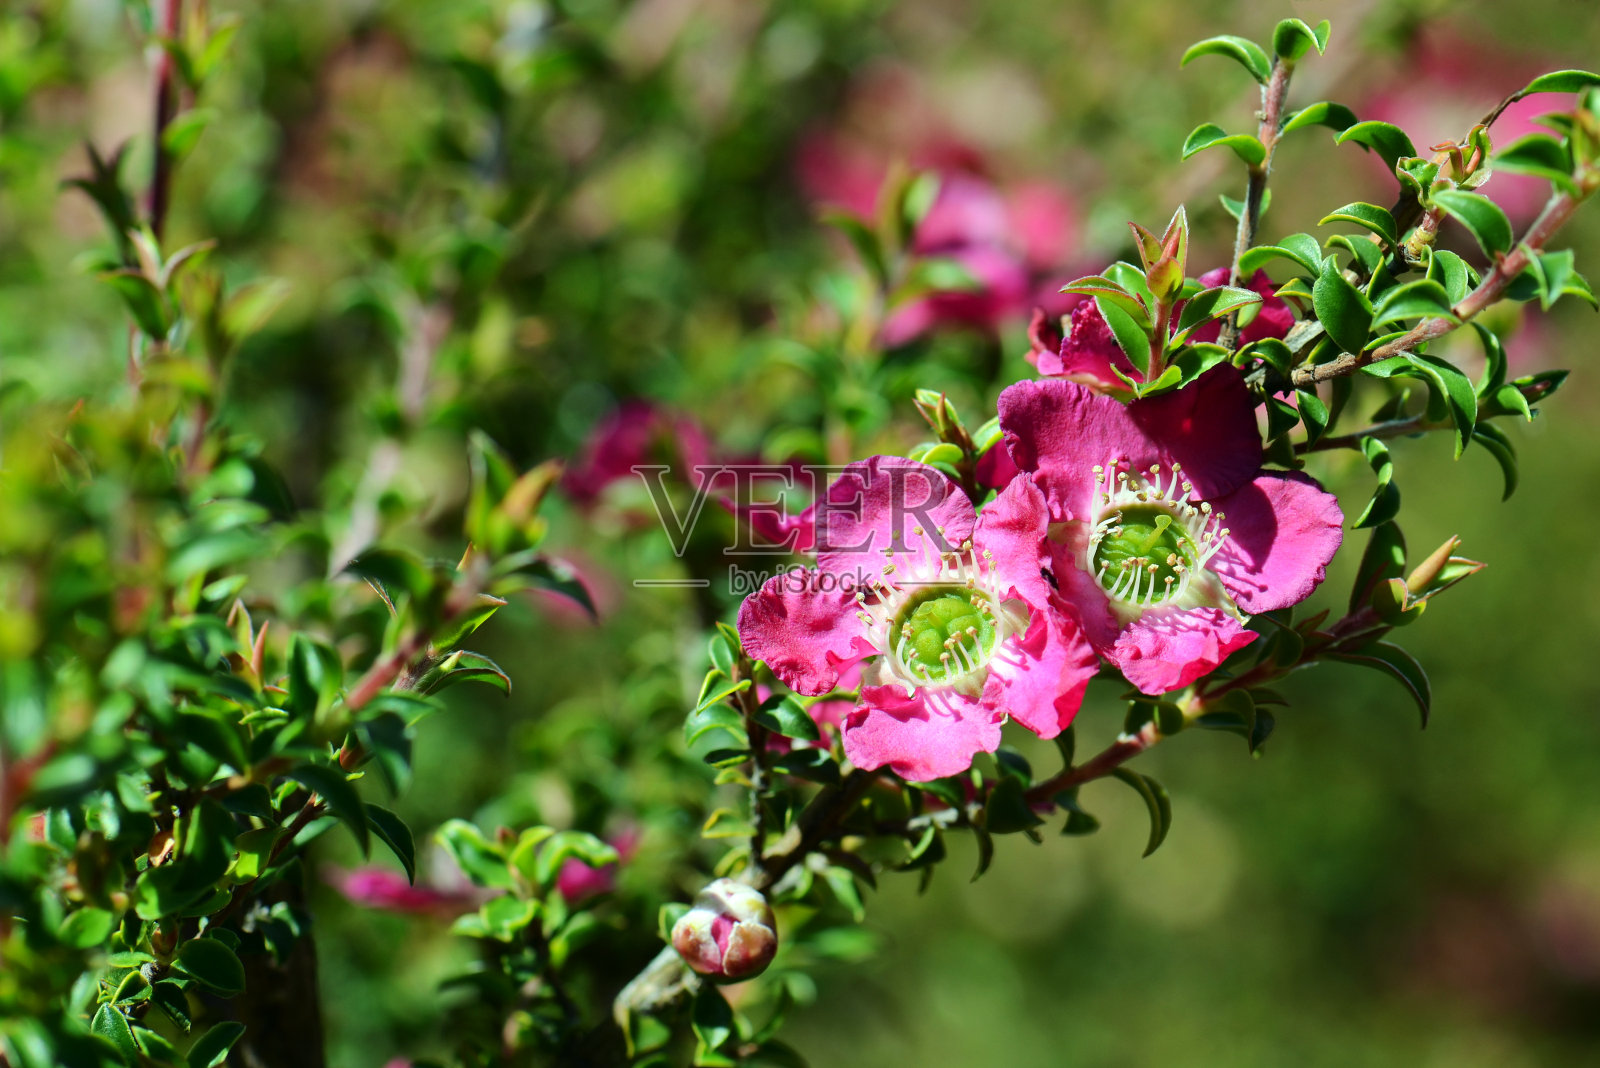 粉红色的花是澳大利亚本土的细叶茶树品种照片摄影图片